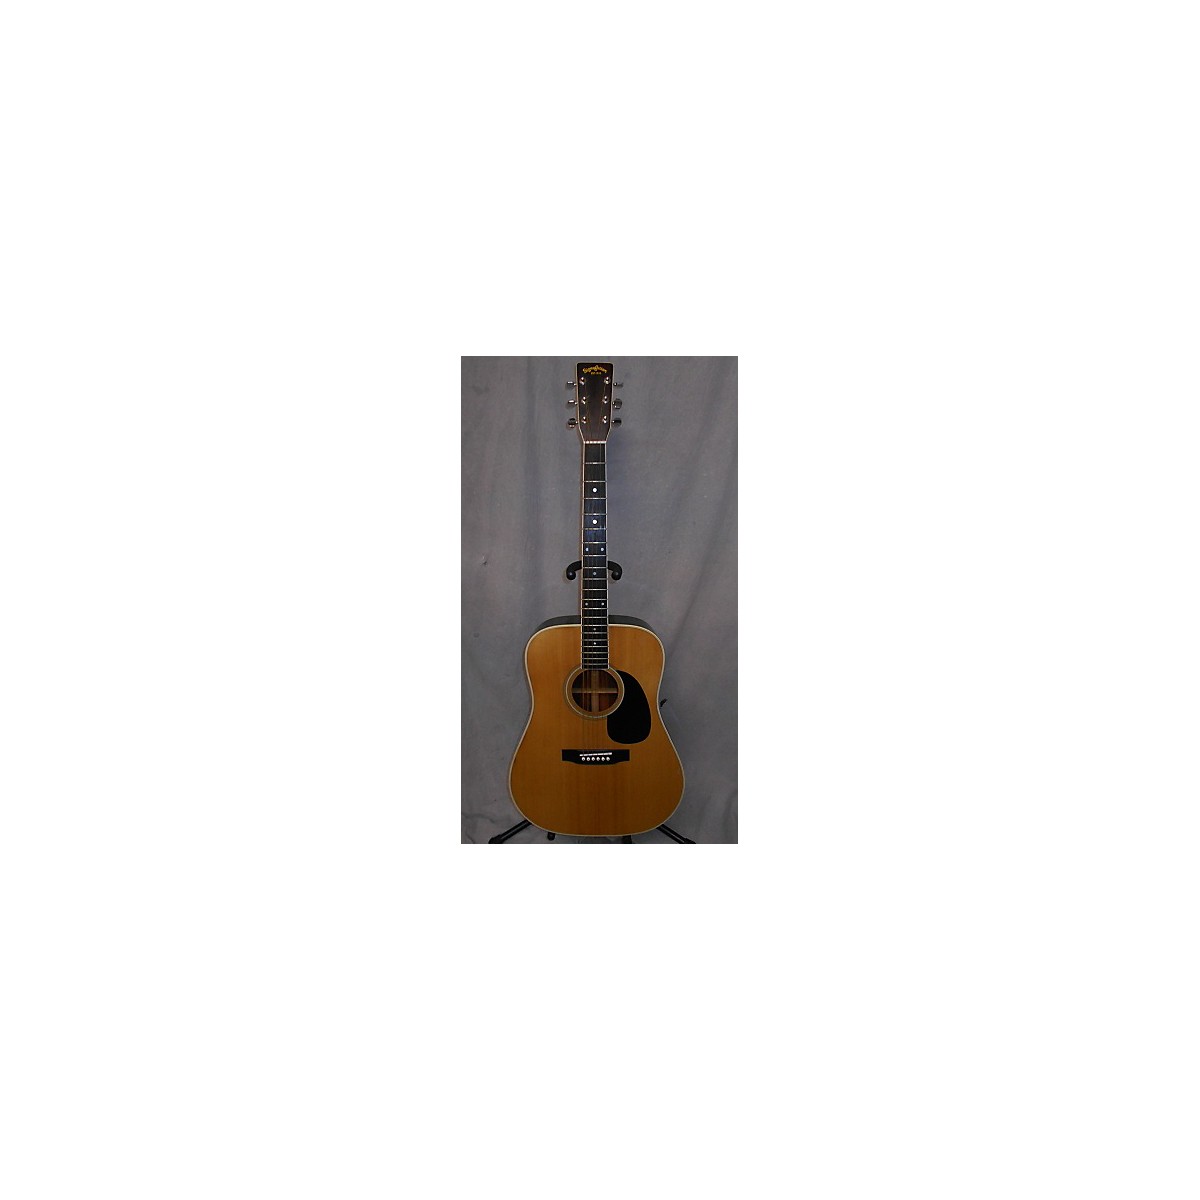 sigma guitar model dm1 serial number 93050040